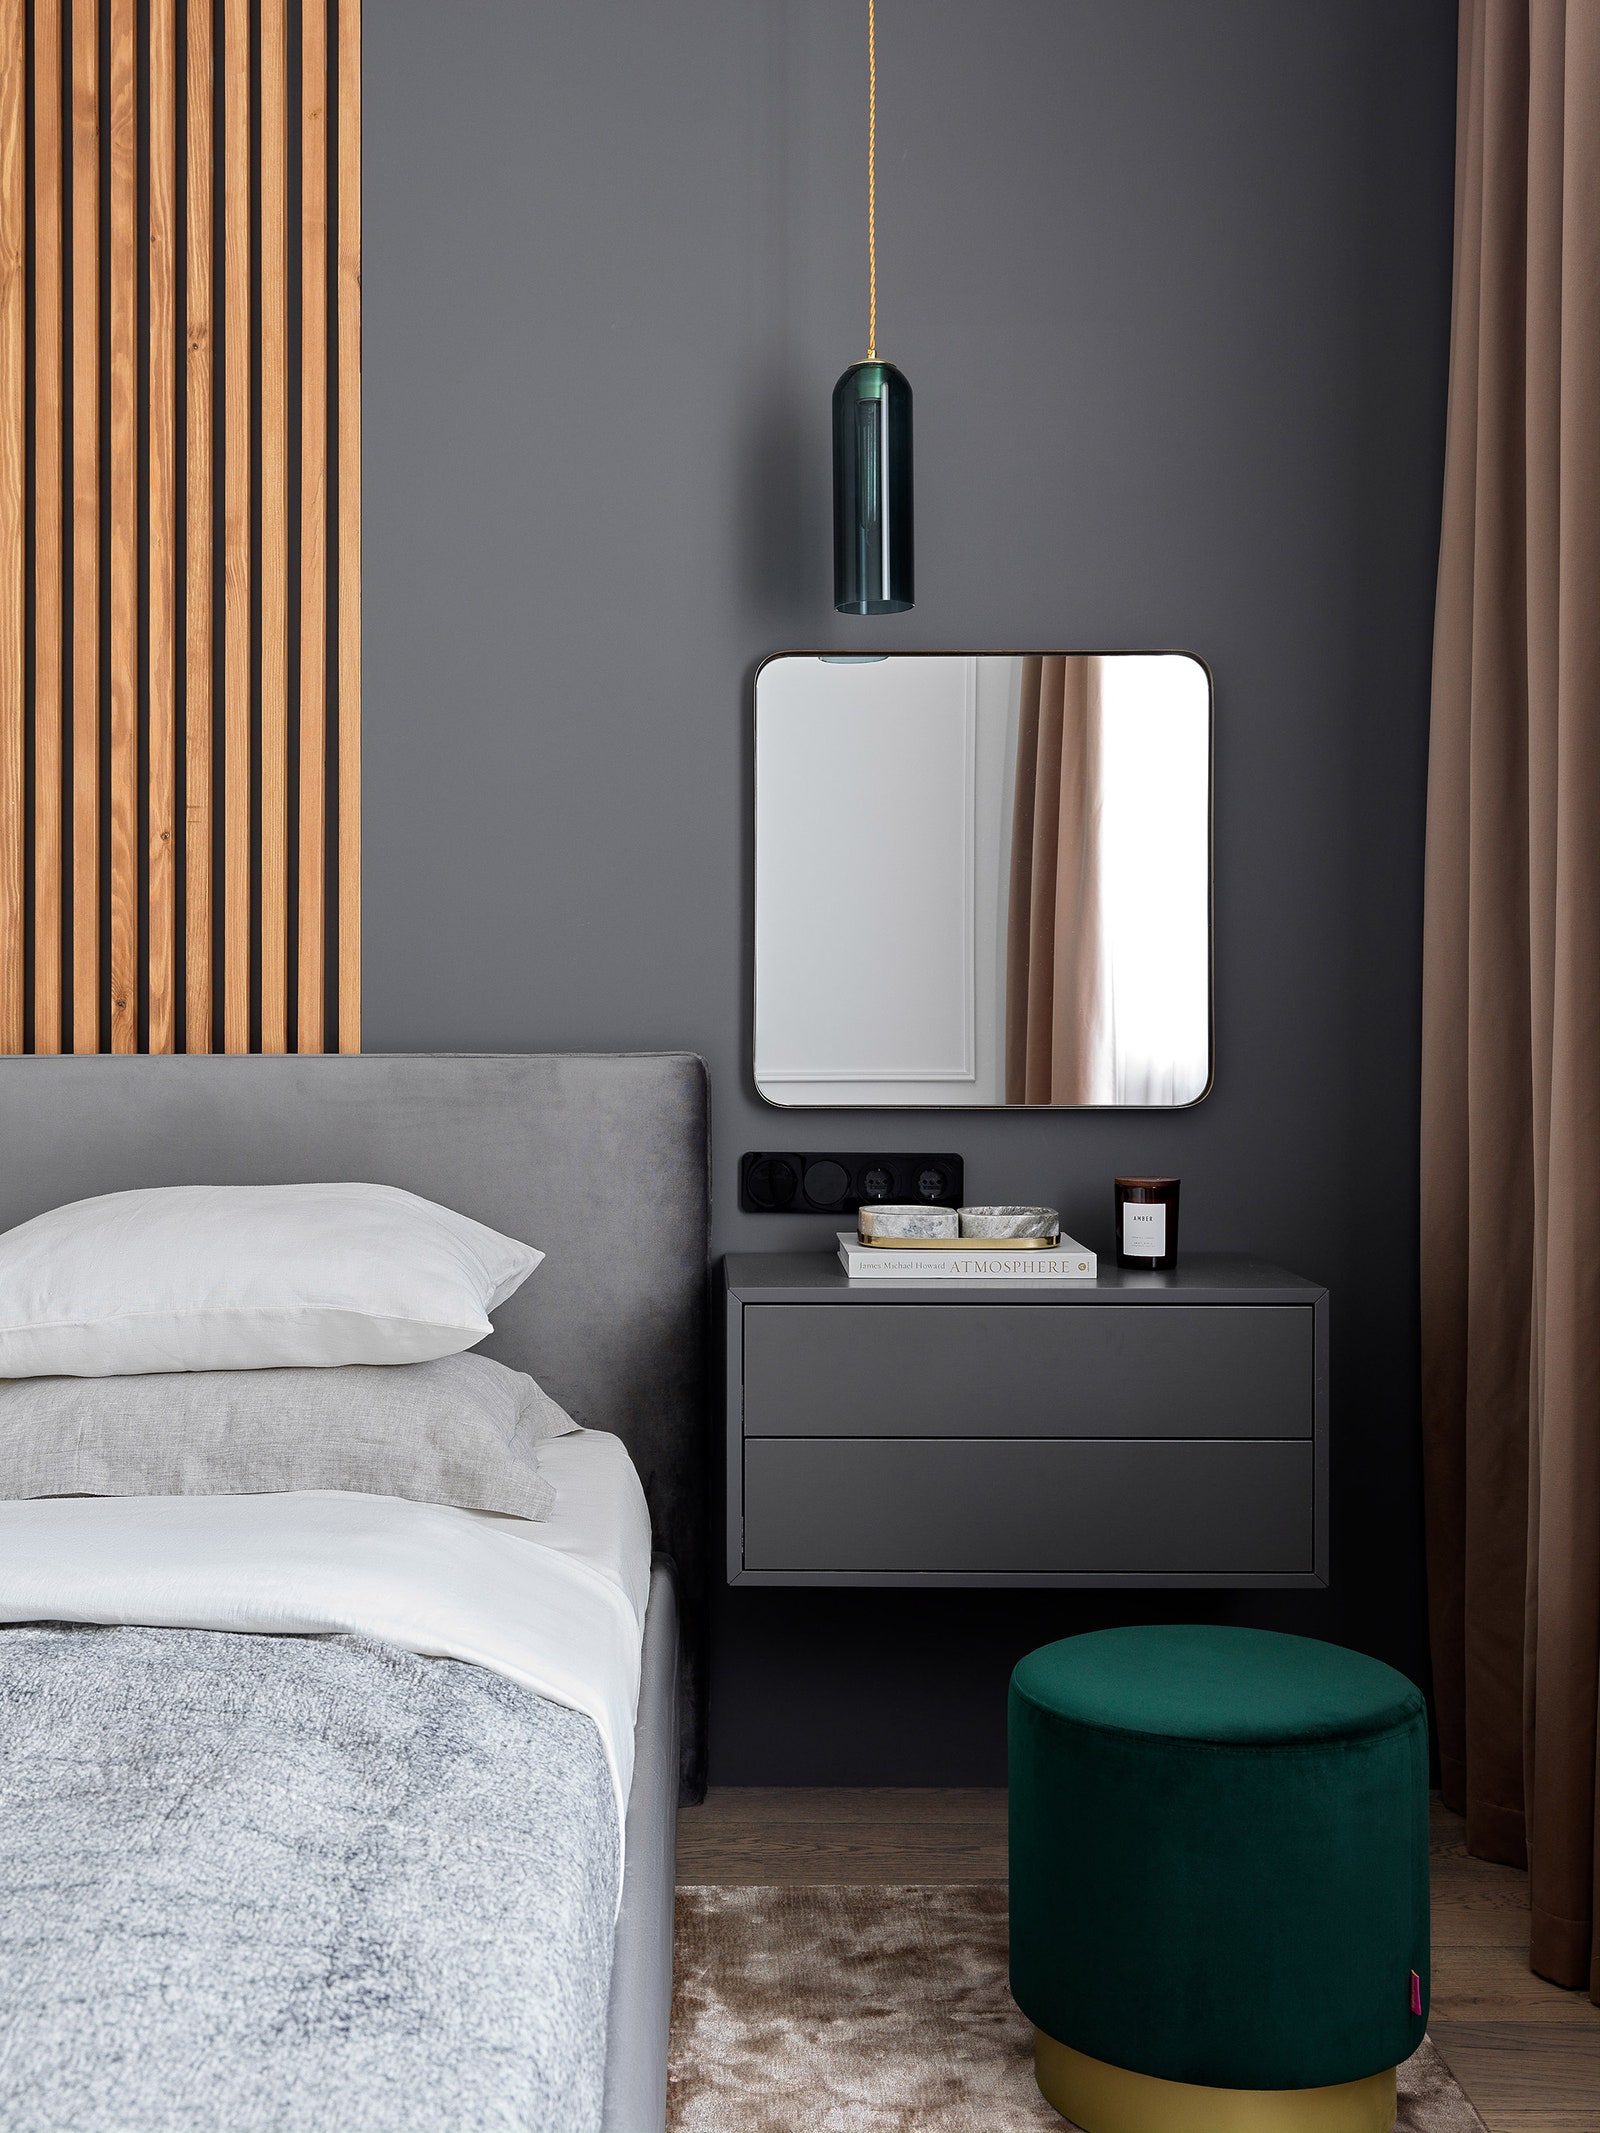 Фрагмент спальни. Кровать Estetica столики Zara Home подвесная консоль у кровати IKEA постельное белье Marki Home...